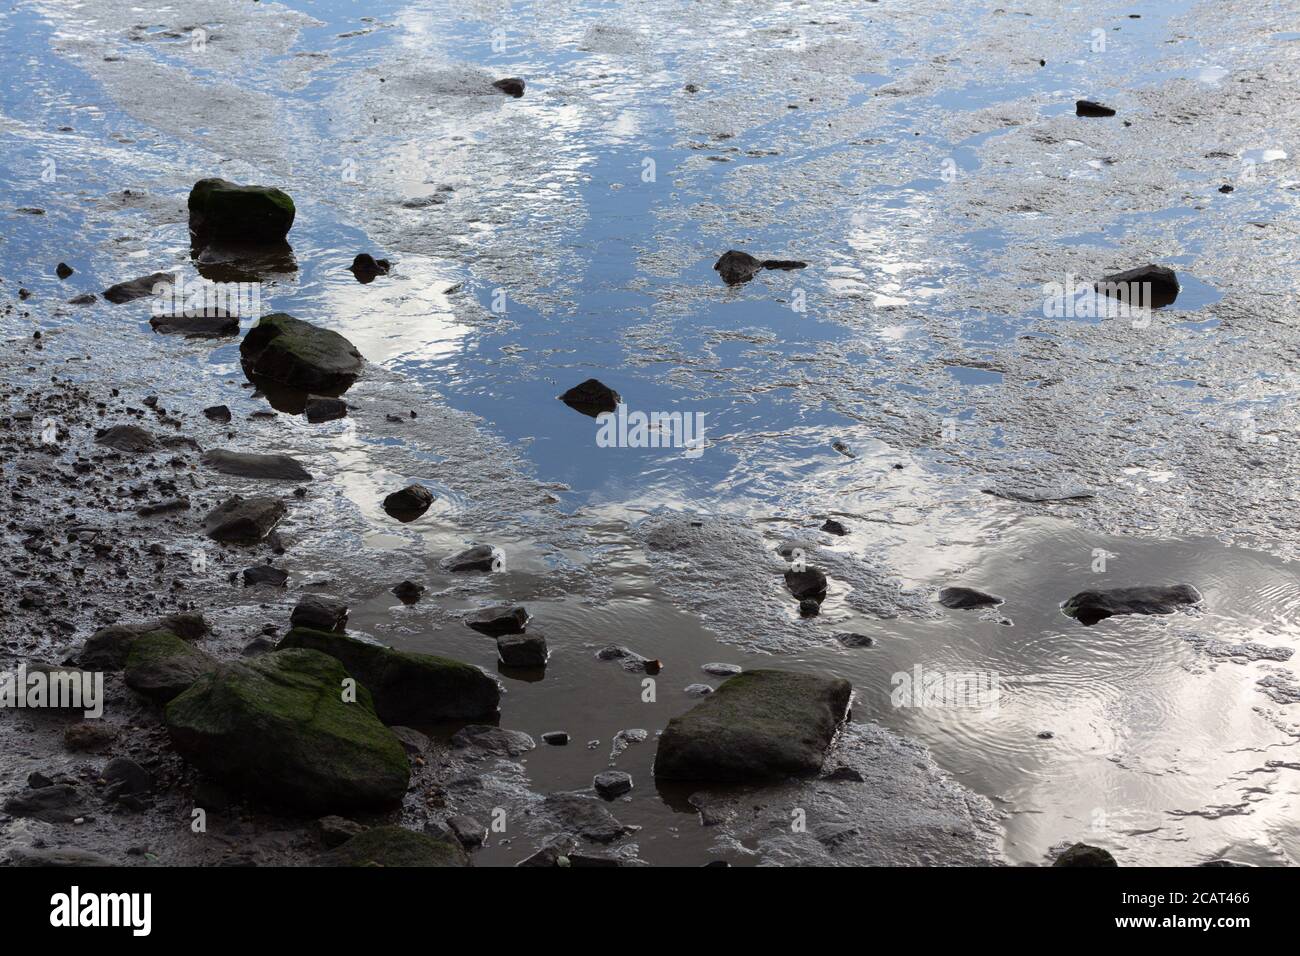 il bordo dell'acqua recedita in una palude paludosa con rocce ricoperte di muschio e un bel riflesso del cielo nuvoloso in acqua Foto Stock